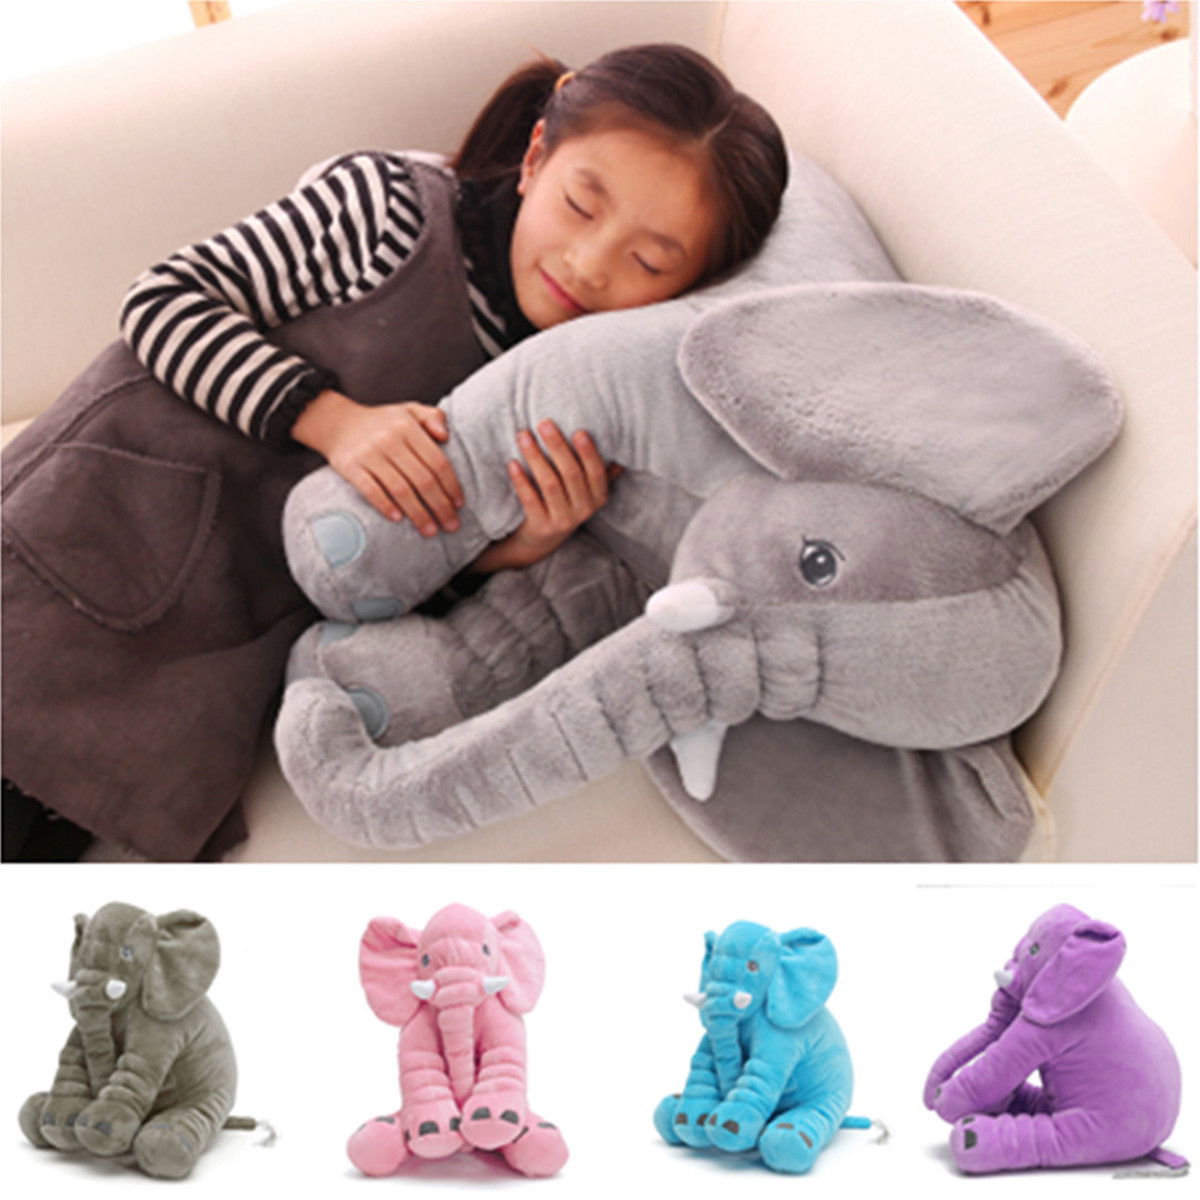 

Baby Дети / Дети Soft Плюшевые Слон Подушка для сна Дети поясничная подушка Игрушки Новый